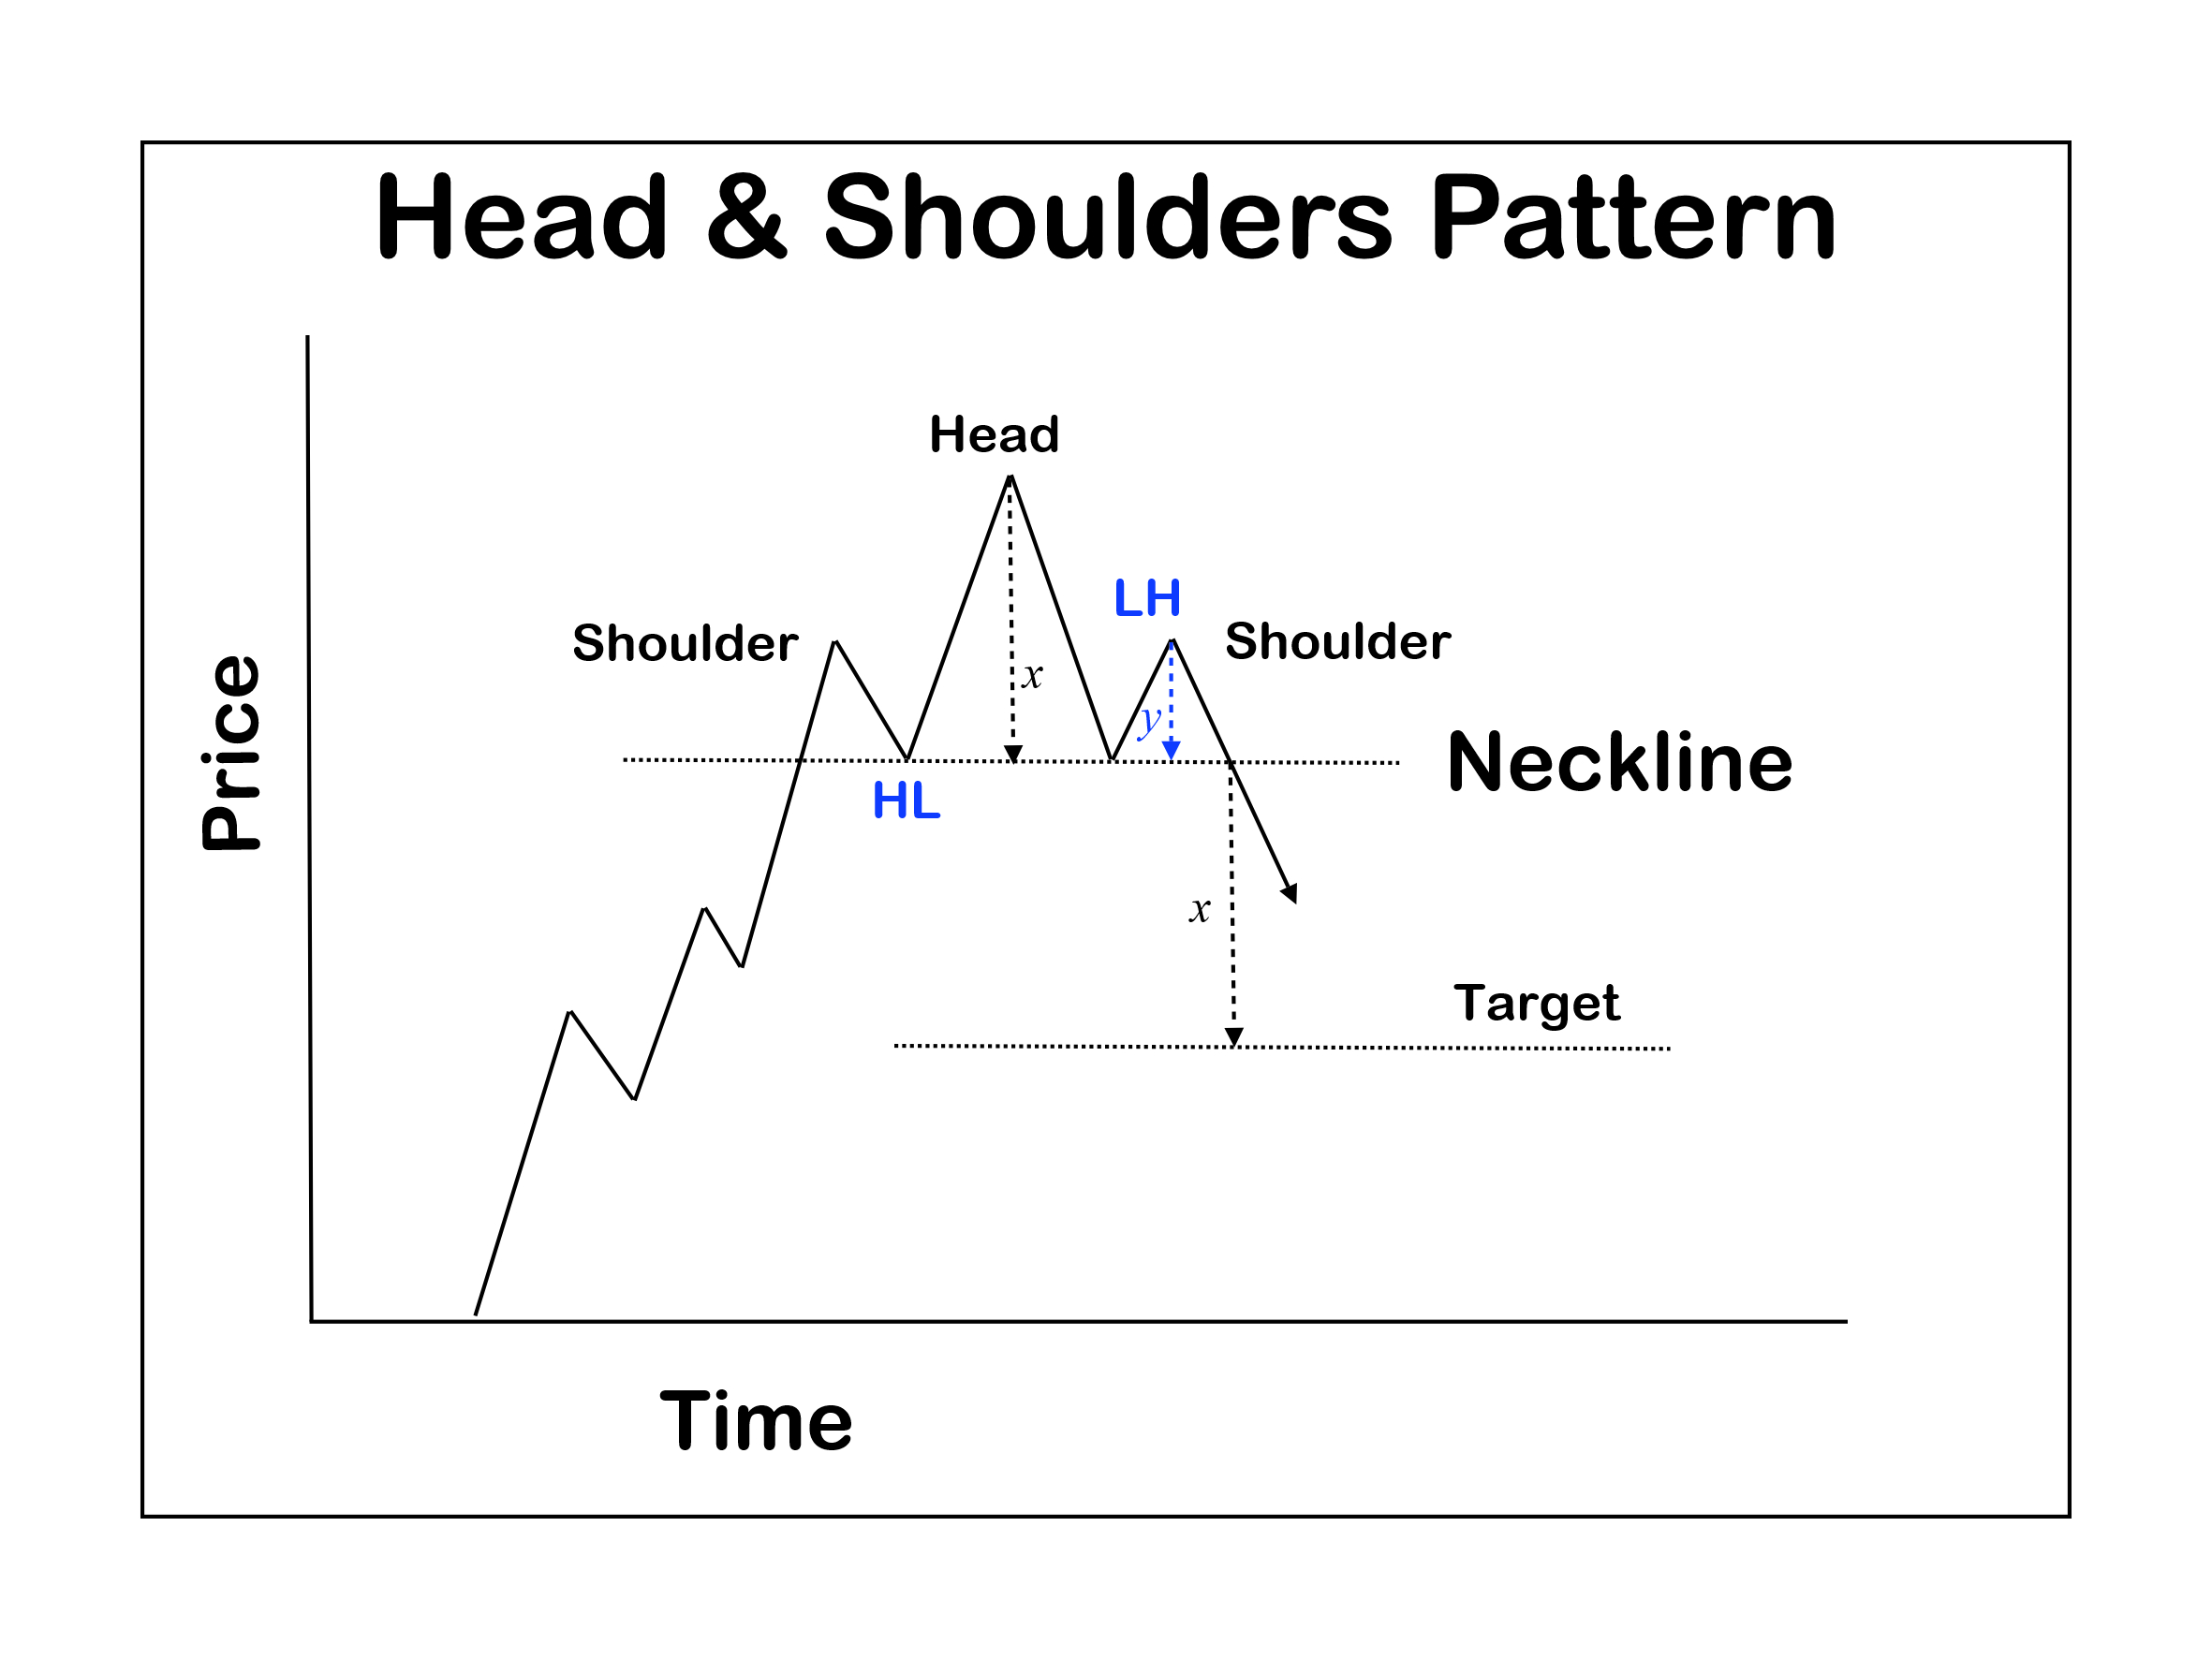 Head & Shoudler pattern